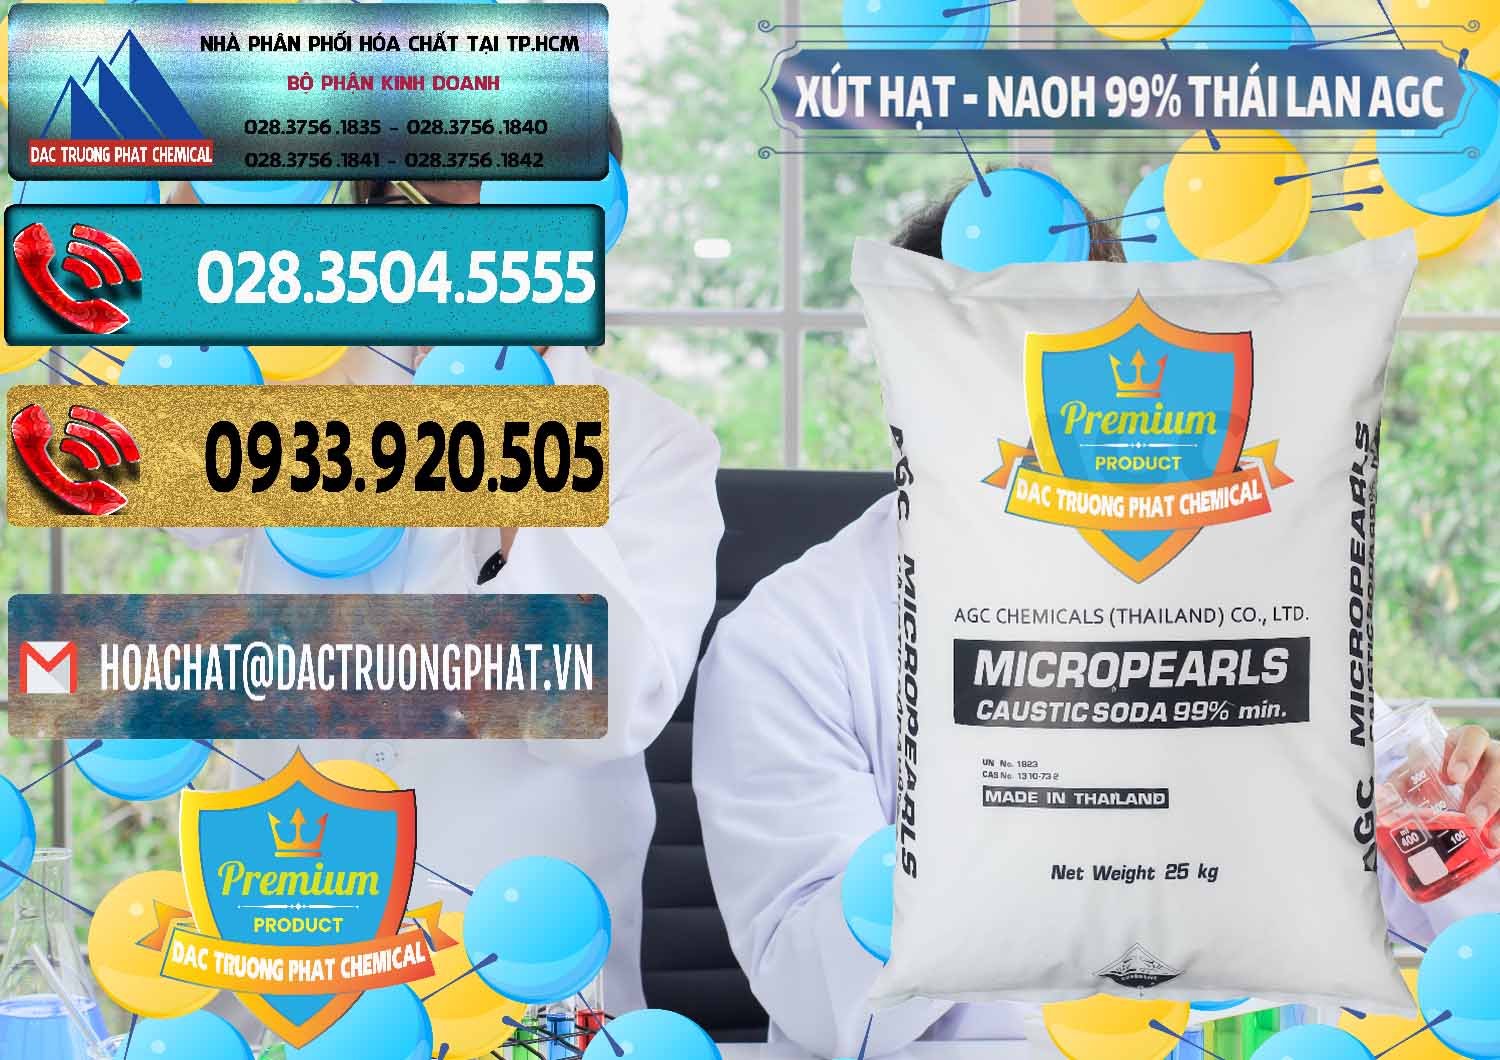 Cty nhập khẩu & bán Xút Hạt - NaOH Bột 99% AGC Thái Lan - 0168 - Cung cấp ( kinh doanh ) hóa chất tại TP.HCM - hoachatdetnhuom.com